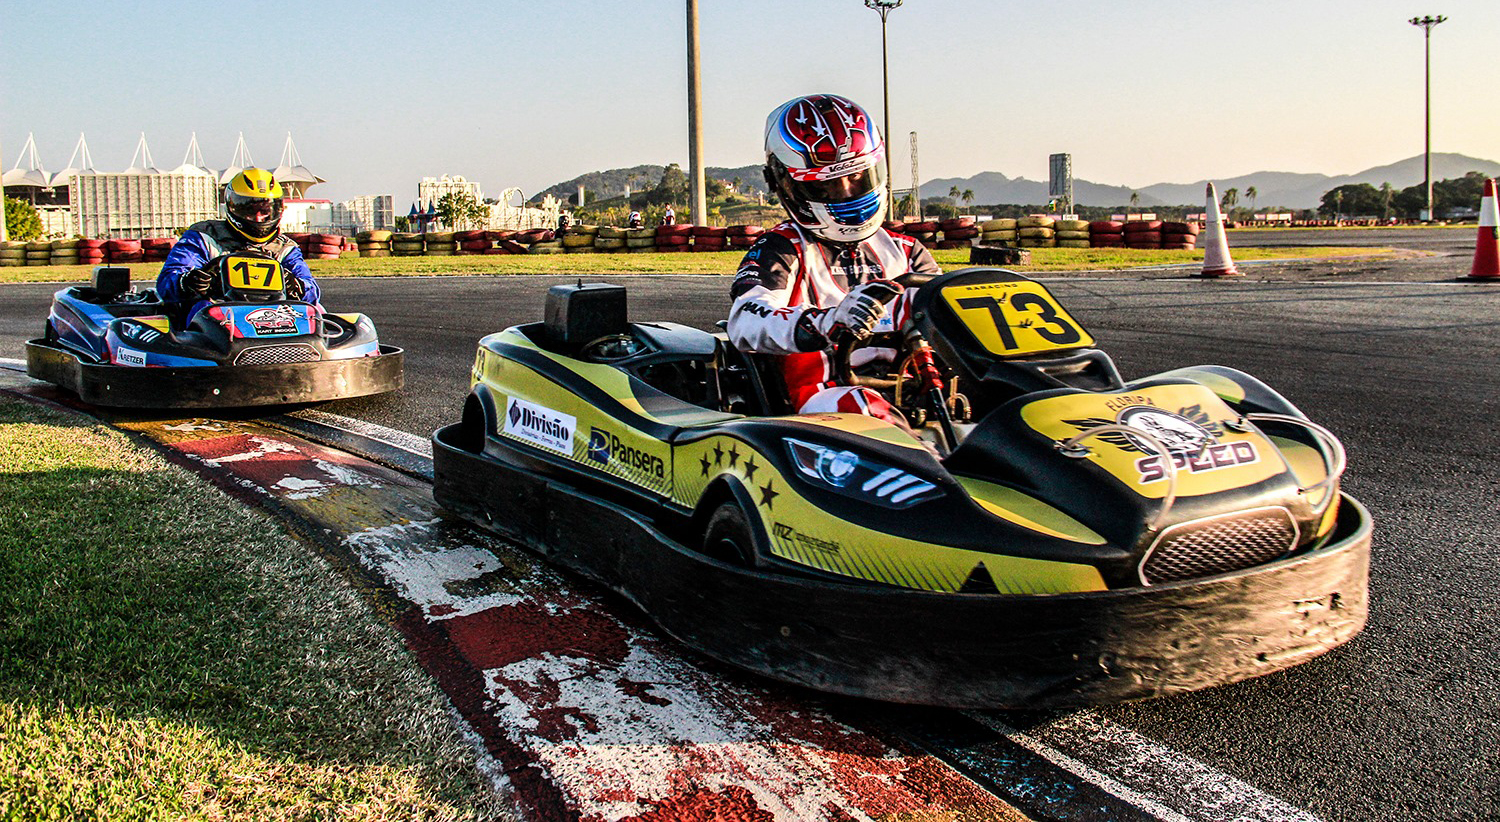 O Kart Indoor líder no Brasil